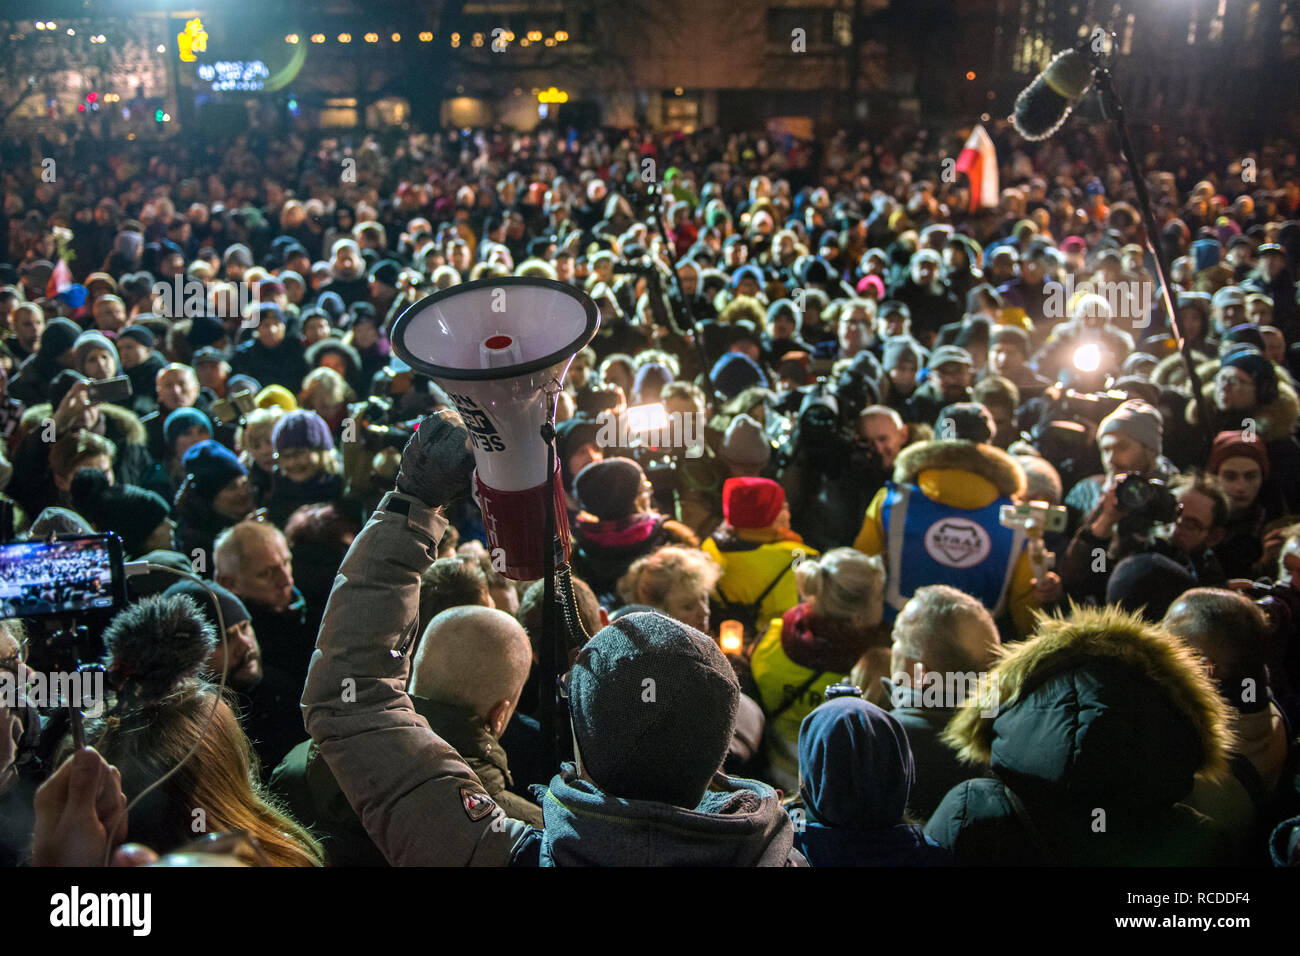 Des milliers de personnes sont considérées des années à payer pour le maire Pawel Adamkiewicz lors de sa commémoration. Pawel Adamowicz, le maire de la ville polonaise de Gdansk est mort après avoir été poignardé plusieurs fois sur scène lors de la Grand Orchestre de Charité de Noël, la Pologne est le plus important organisme de bienfaisance le dimanche soir. Banque D'Images